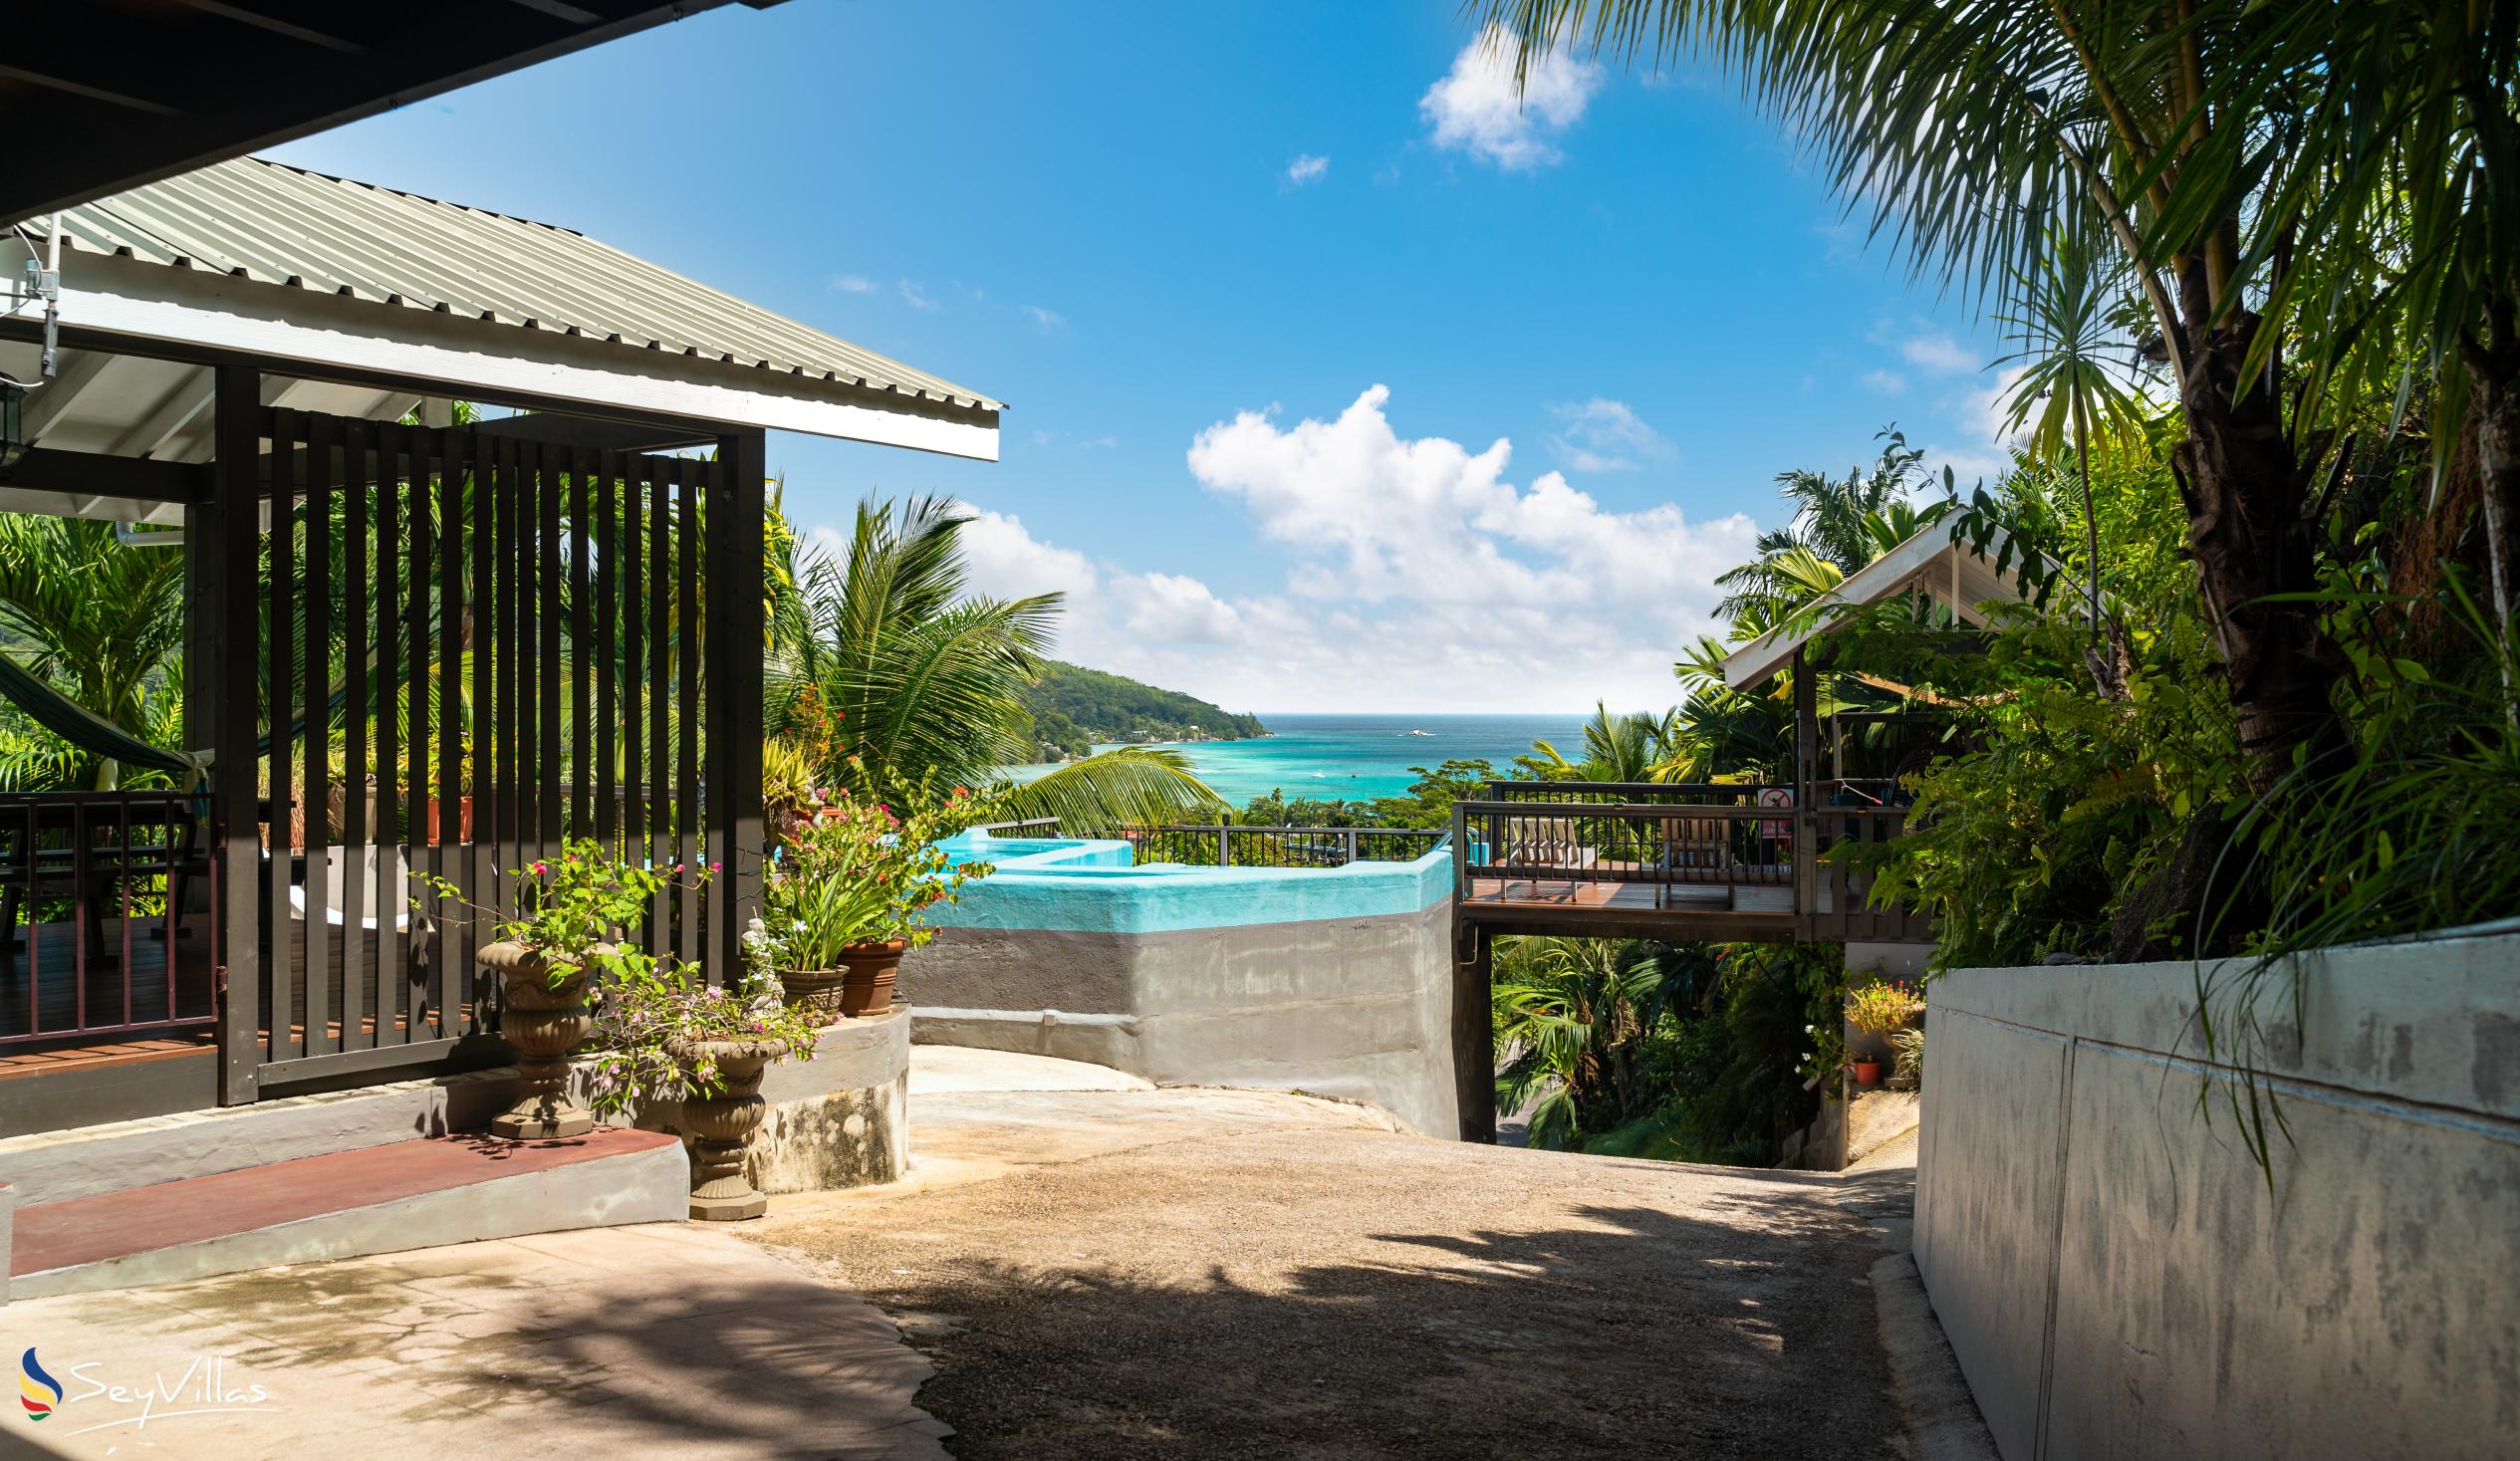 Photo 22: Stephna Residence - Outdoor area - Mahé (Seychelles)